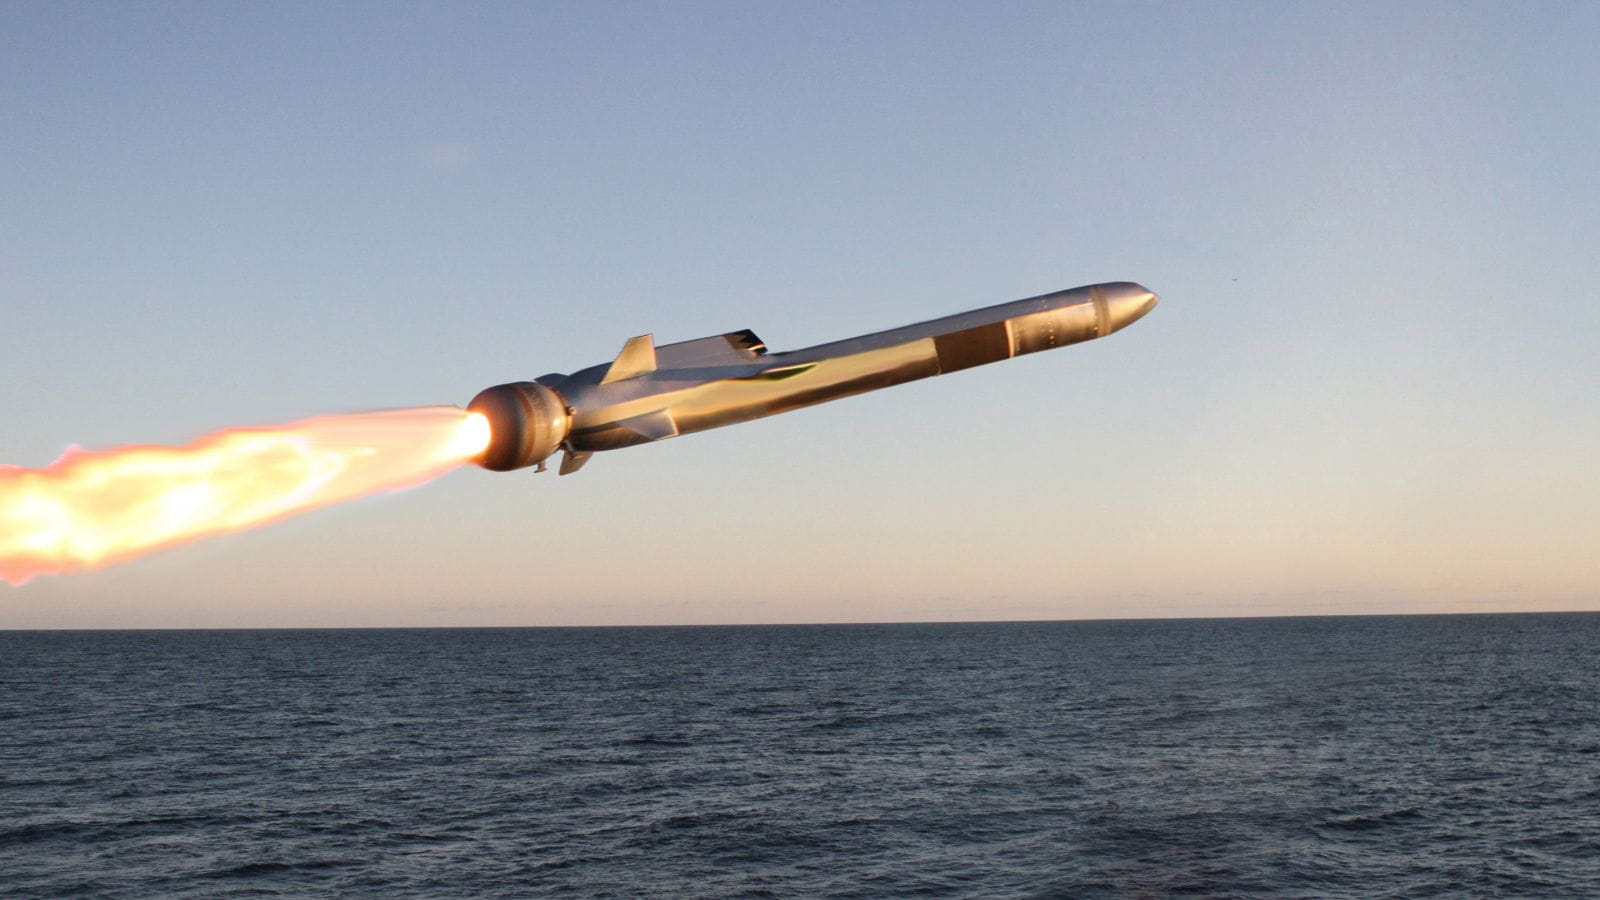 Naval air strike missile skimming across water